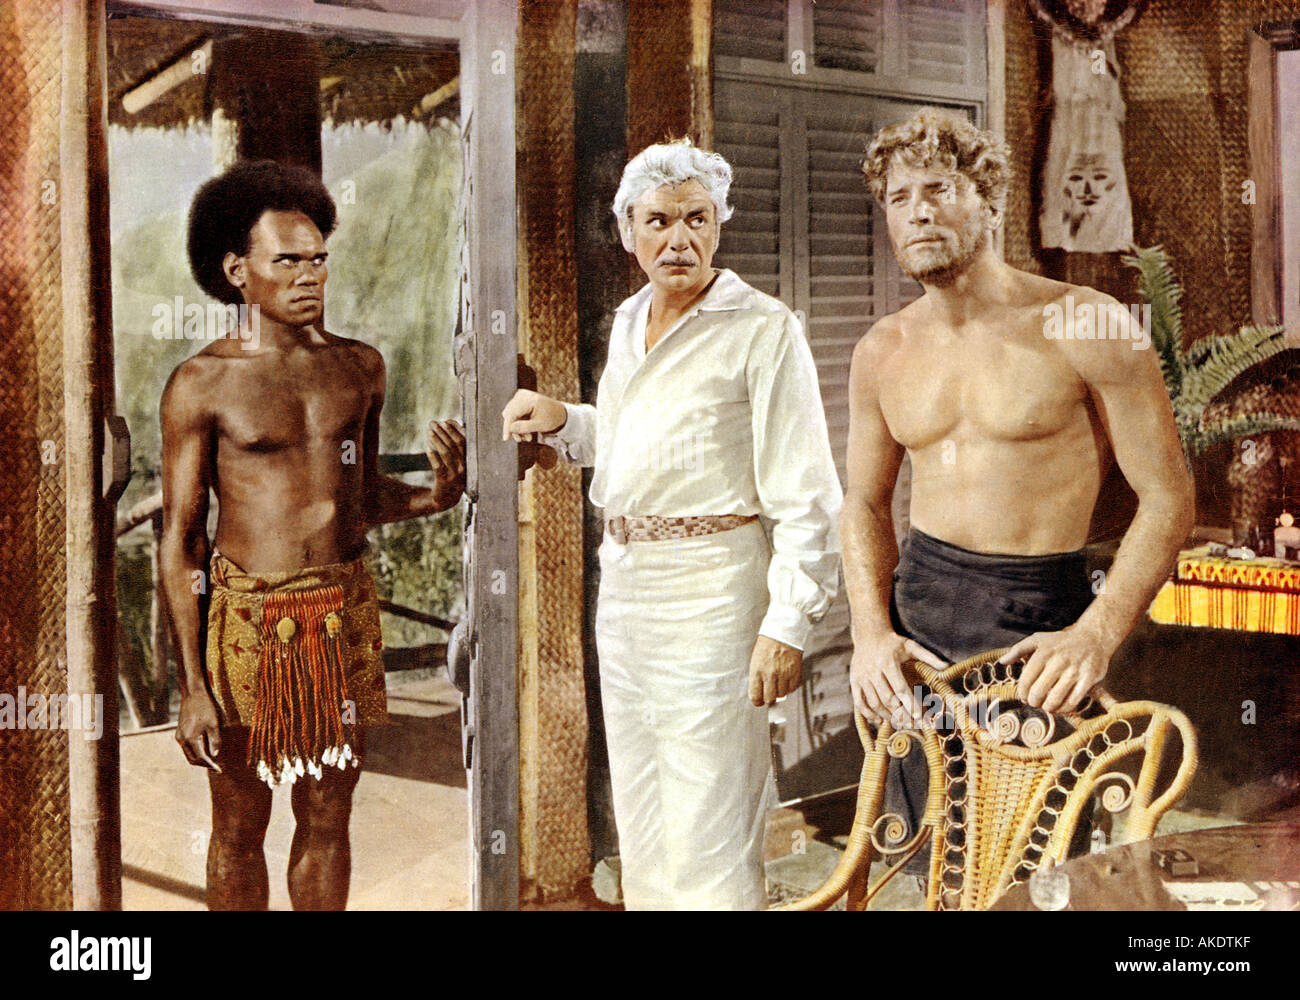 SEINE Majestät O KEEFE 1954 Warner-Film mit Burt Lancaster auf der rechten Seite Stockfoto